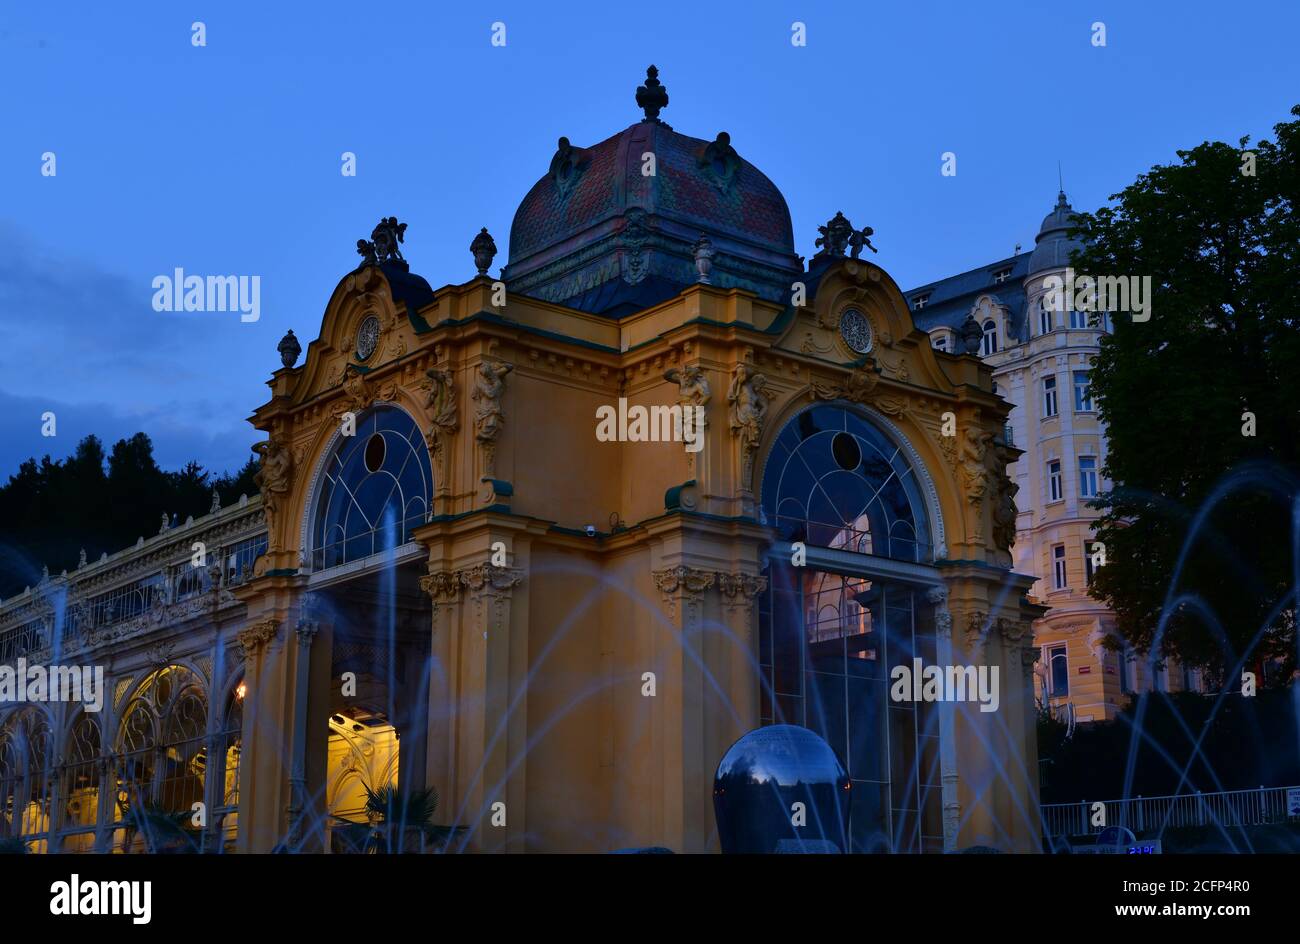 Gros plan de la fontaine chantante et de la colonnade au crépuscule. Marianske lazne, république tchèque Banque D'Images